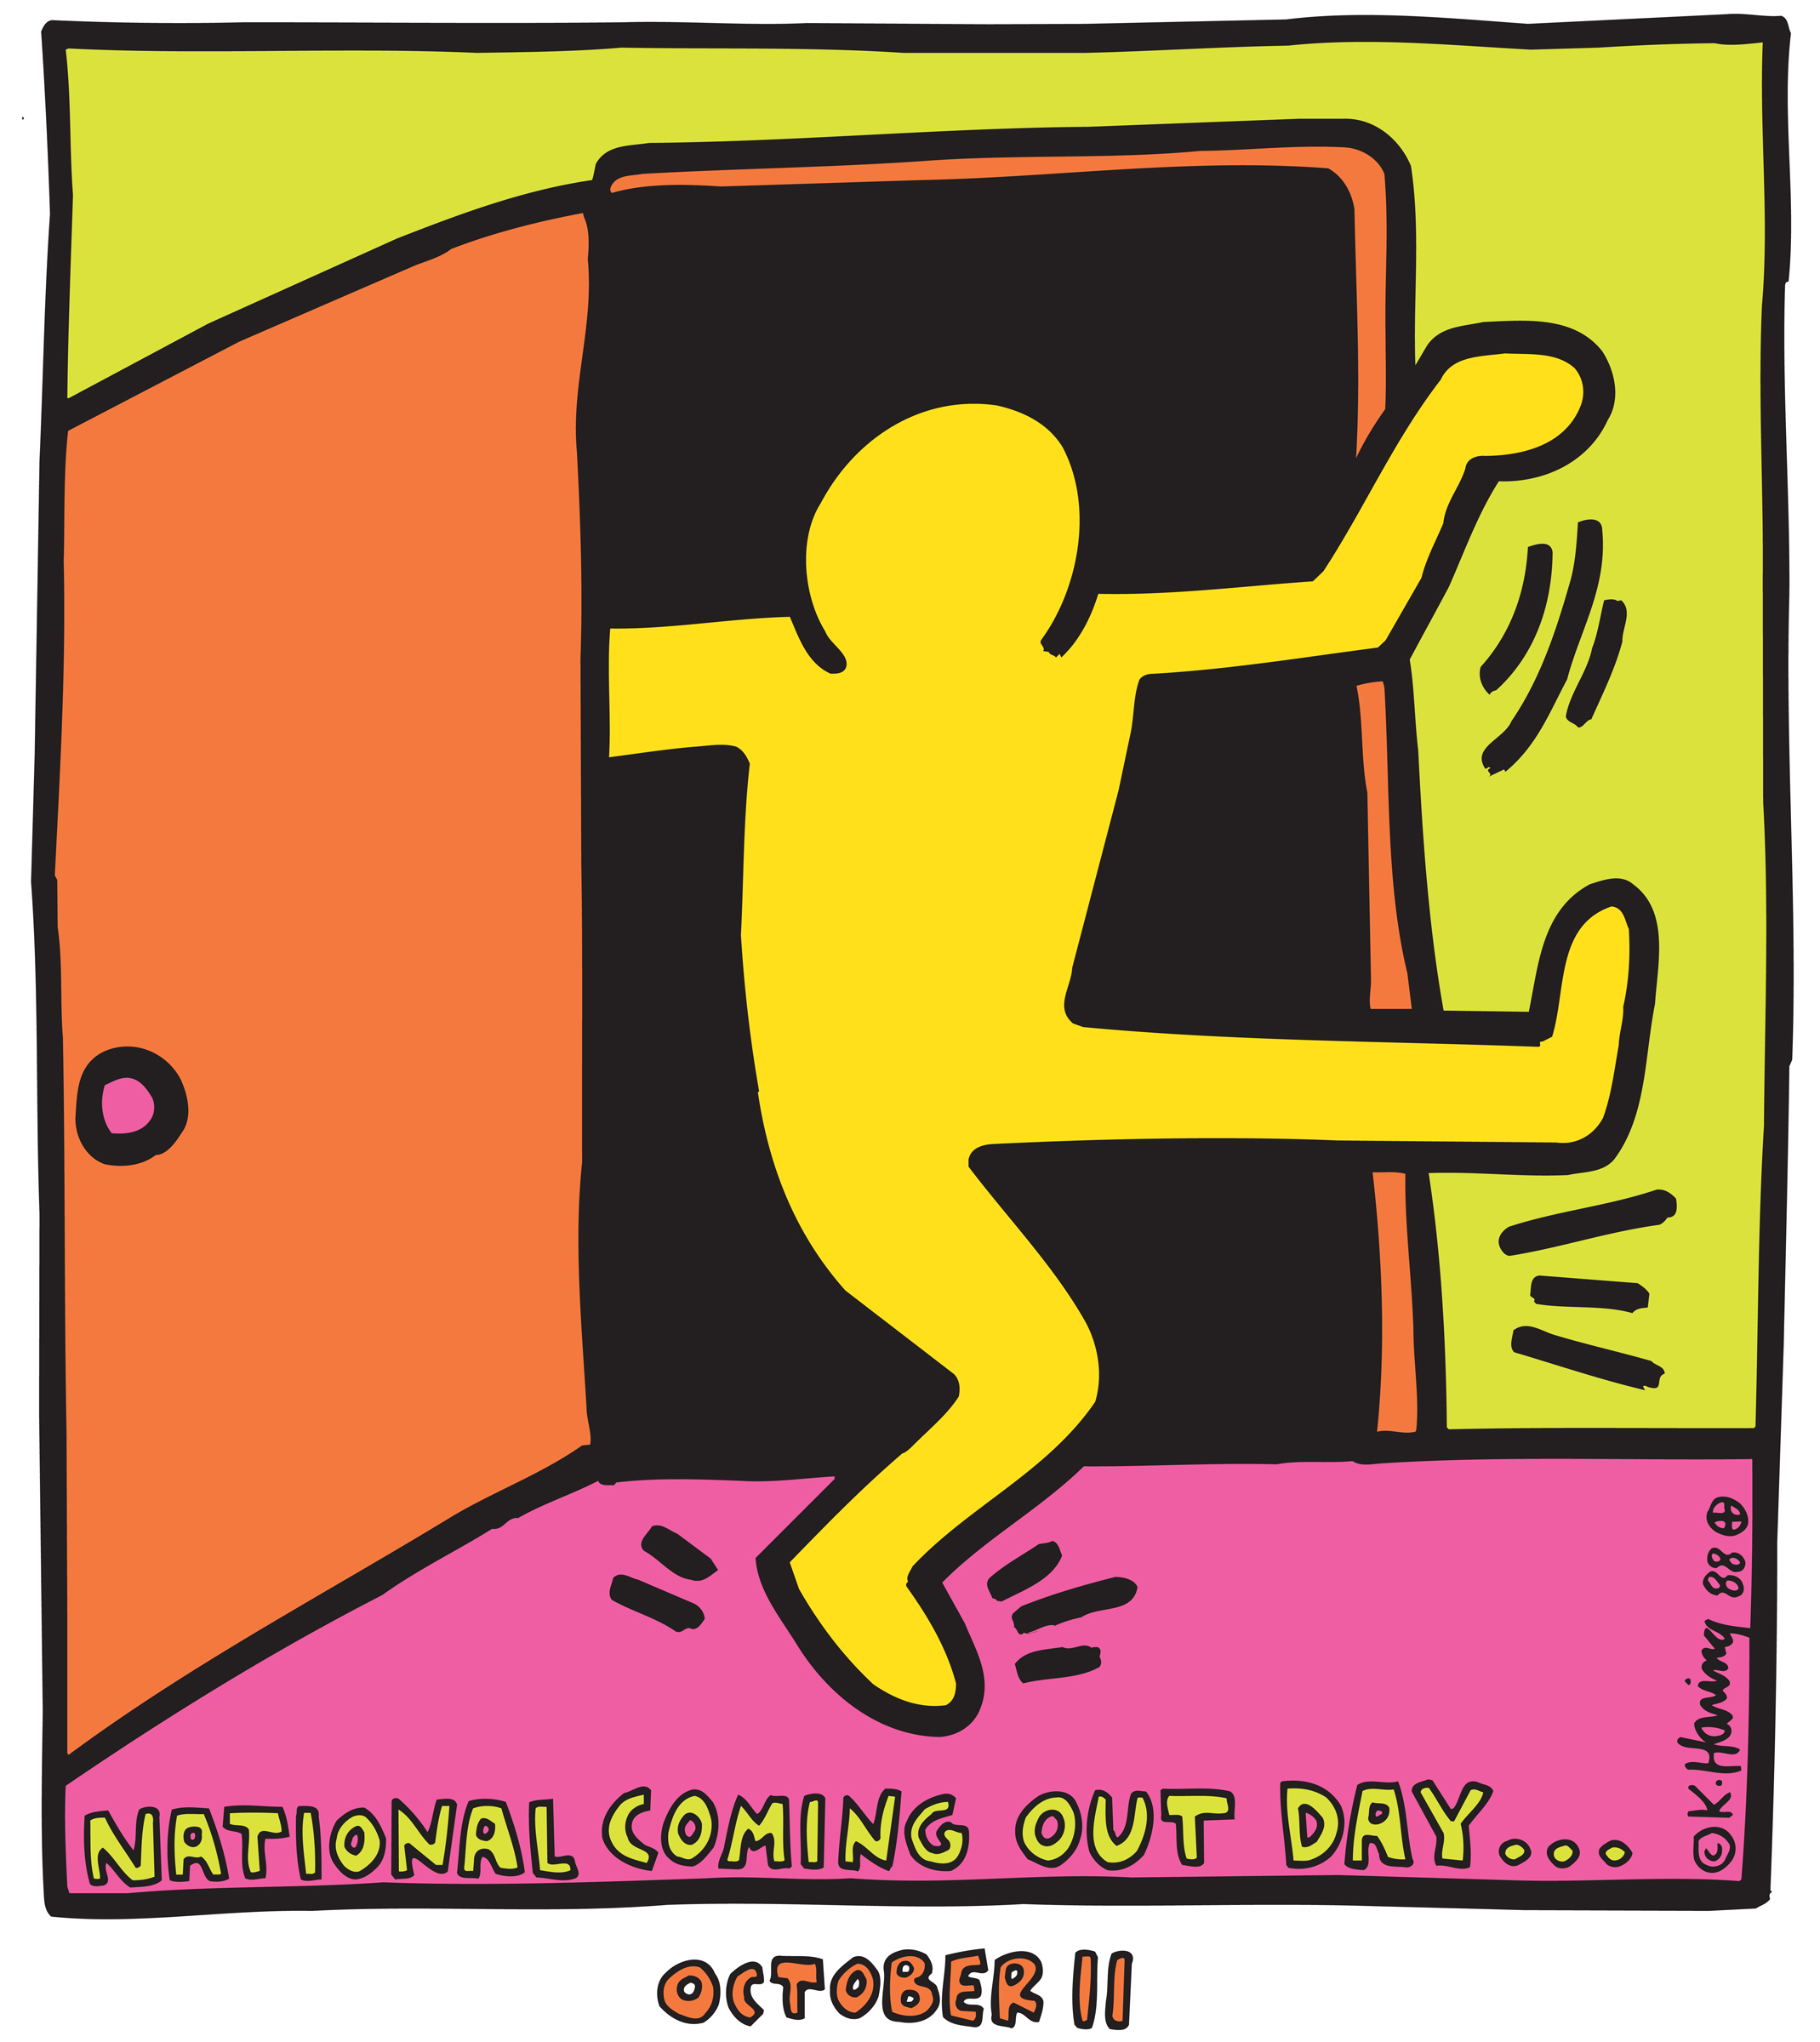 Logo Međunarodnog dana coming outa, kojeg je dizajnirao umjetnik Keith Harring, a koji se obilježava svakog 11. oktobra